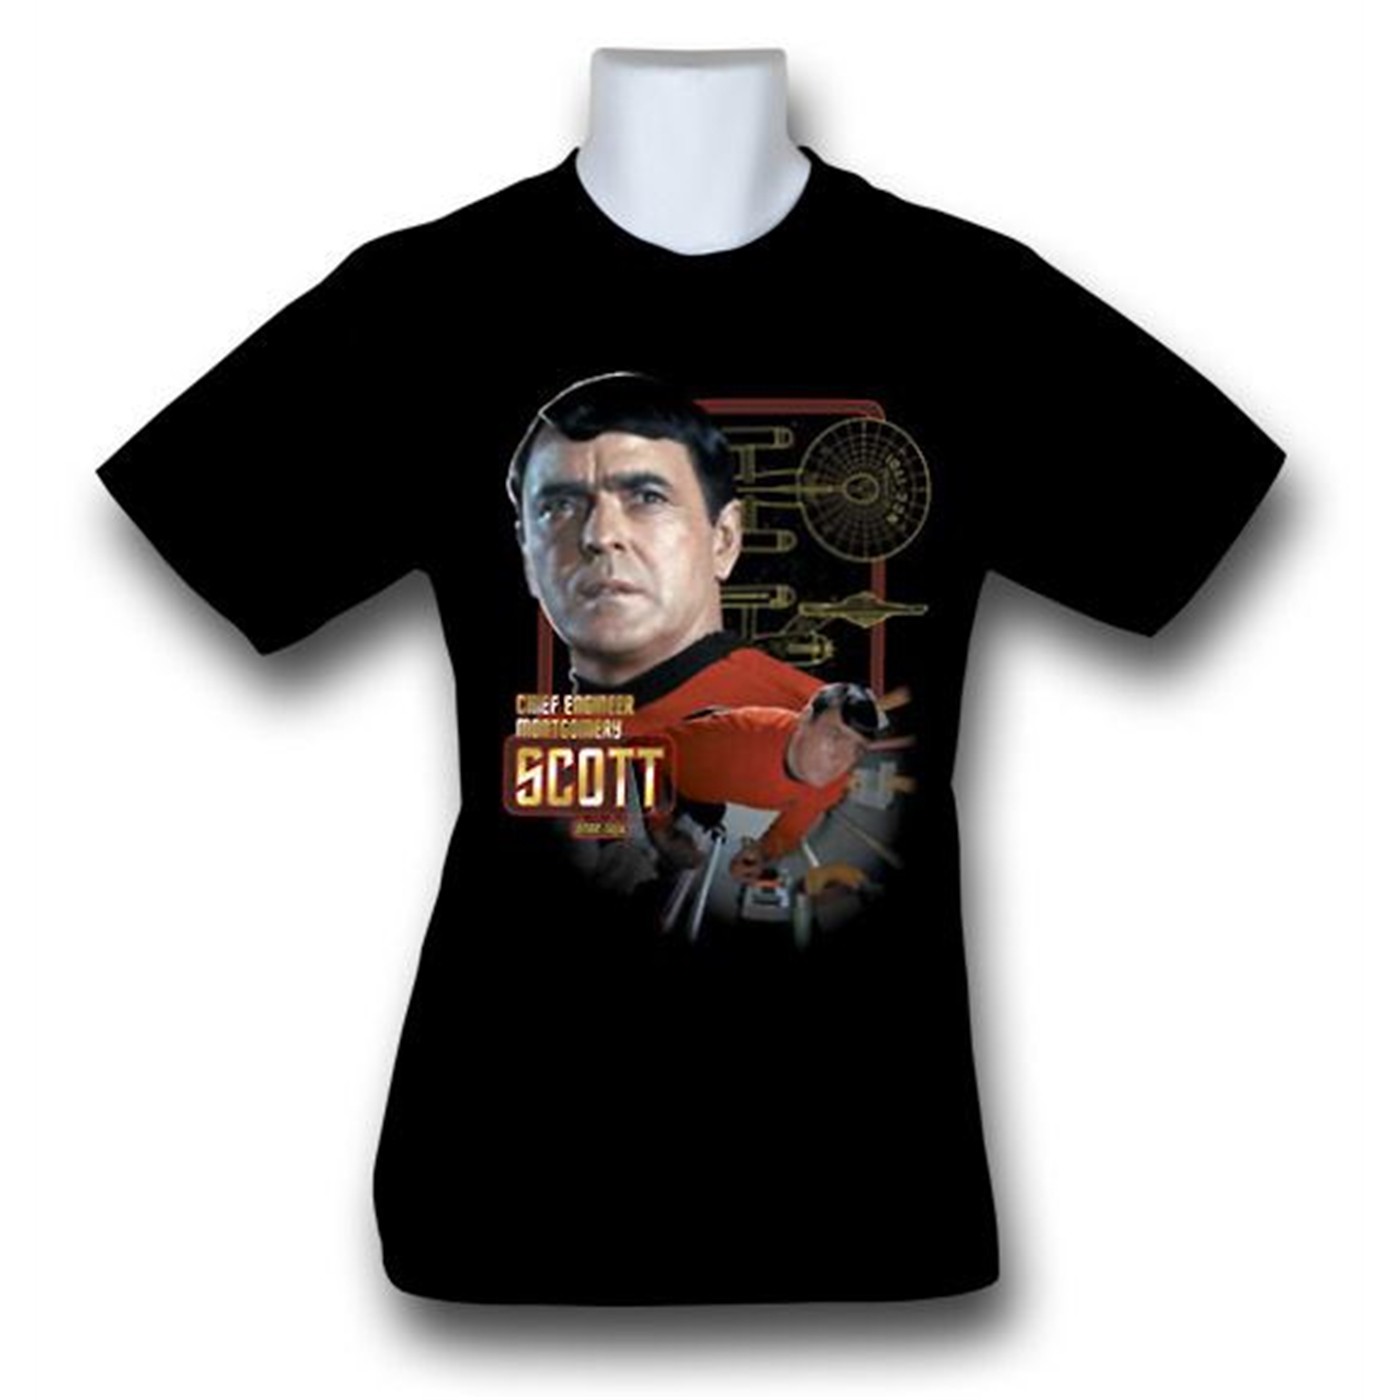 Star Trek Chief Engineer Scott T-Shirt